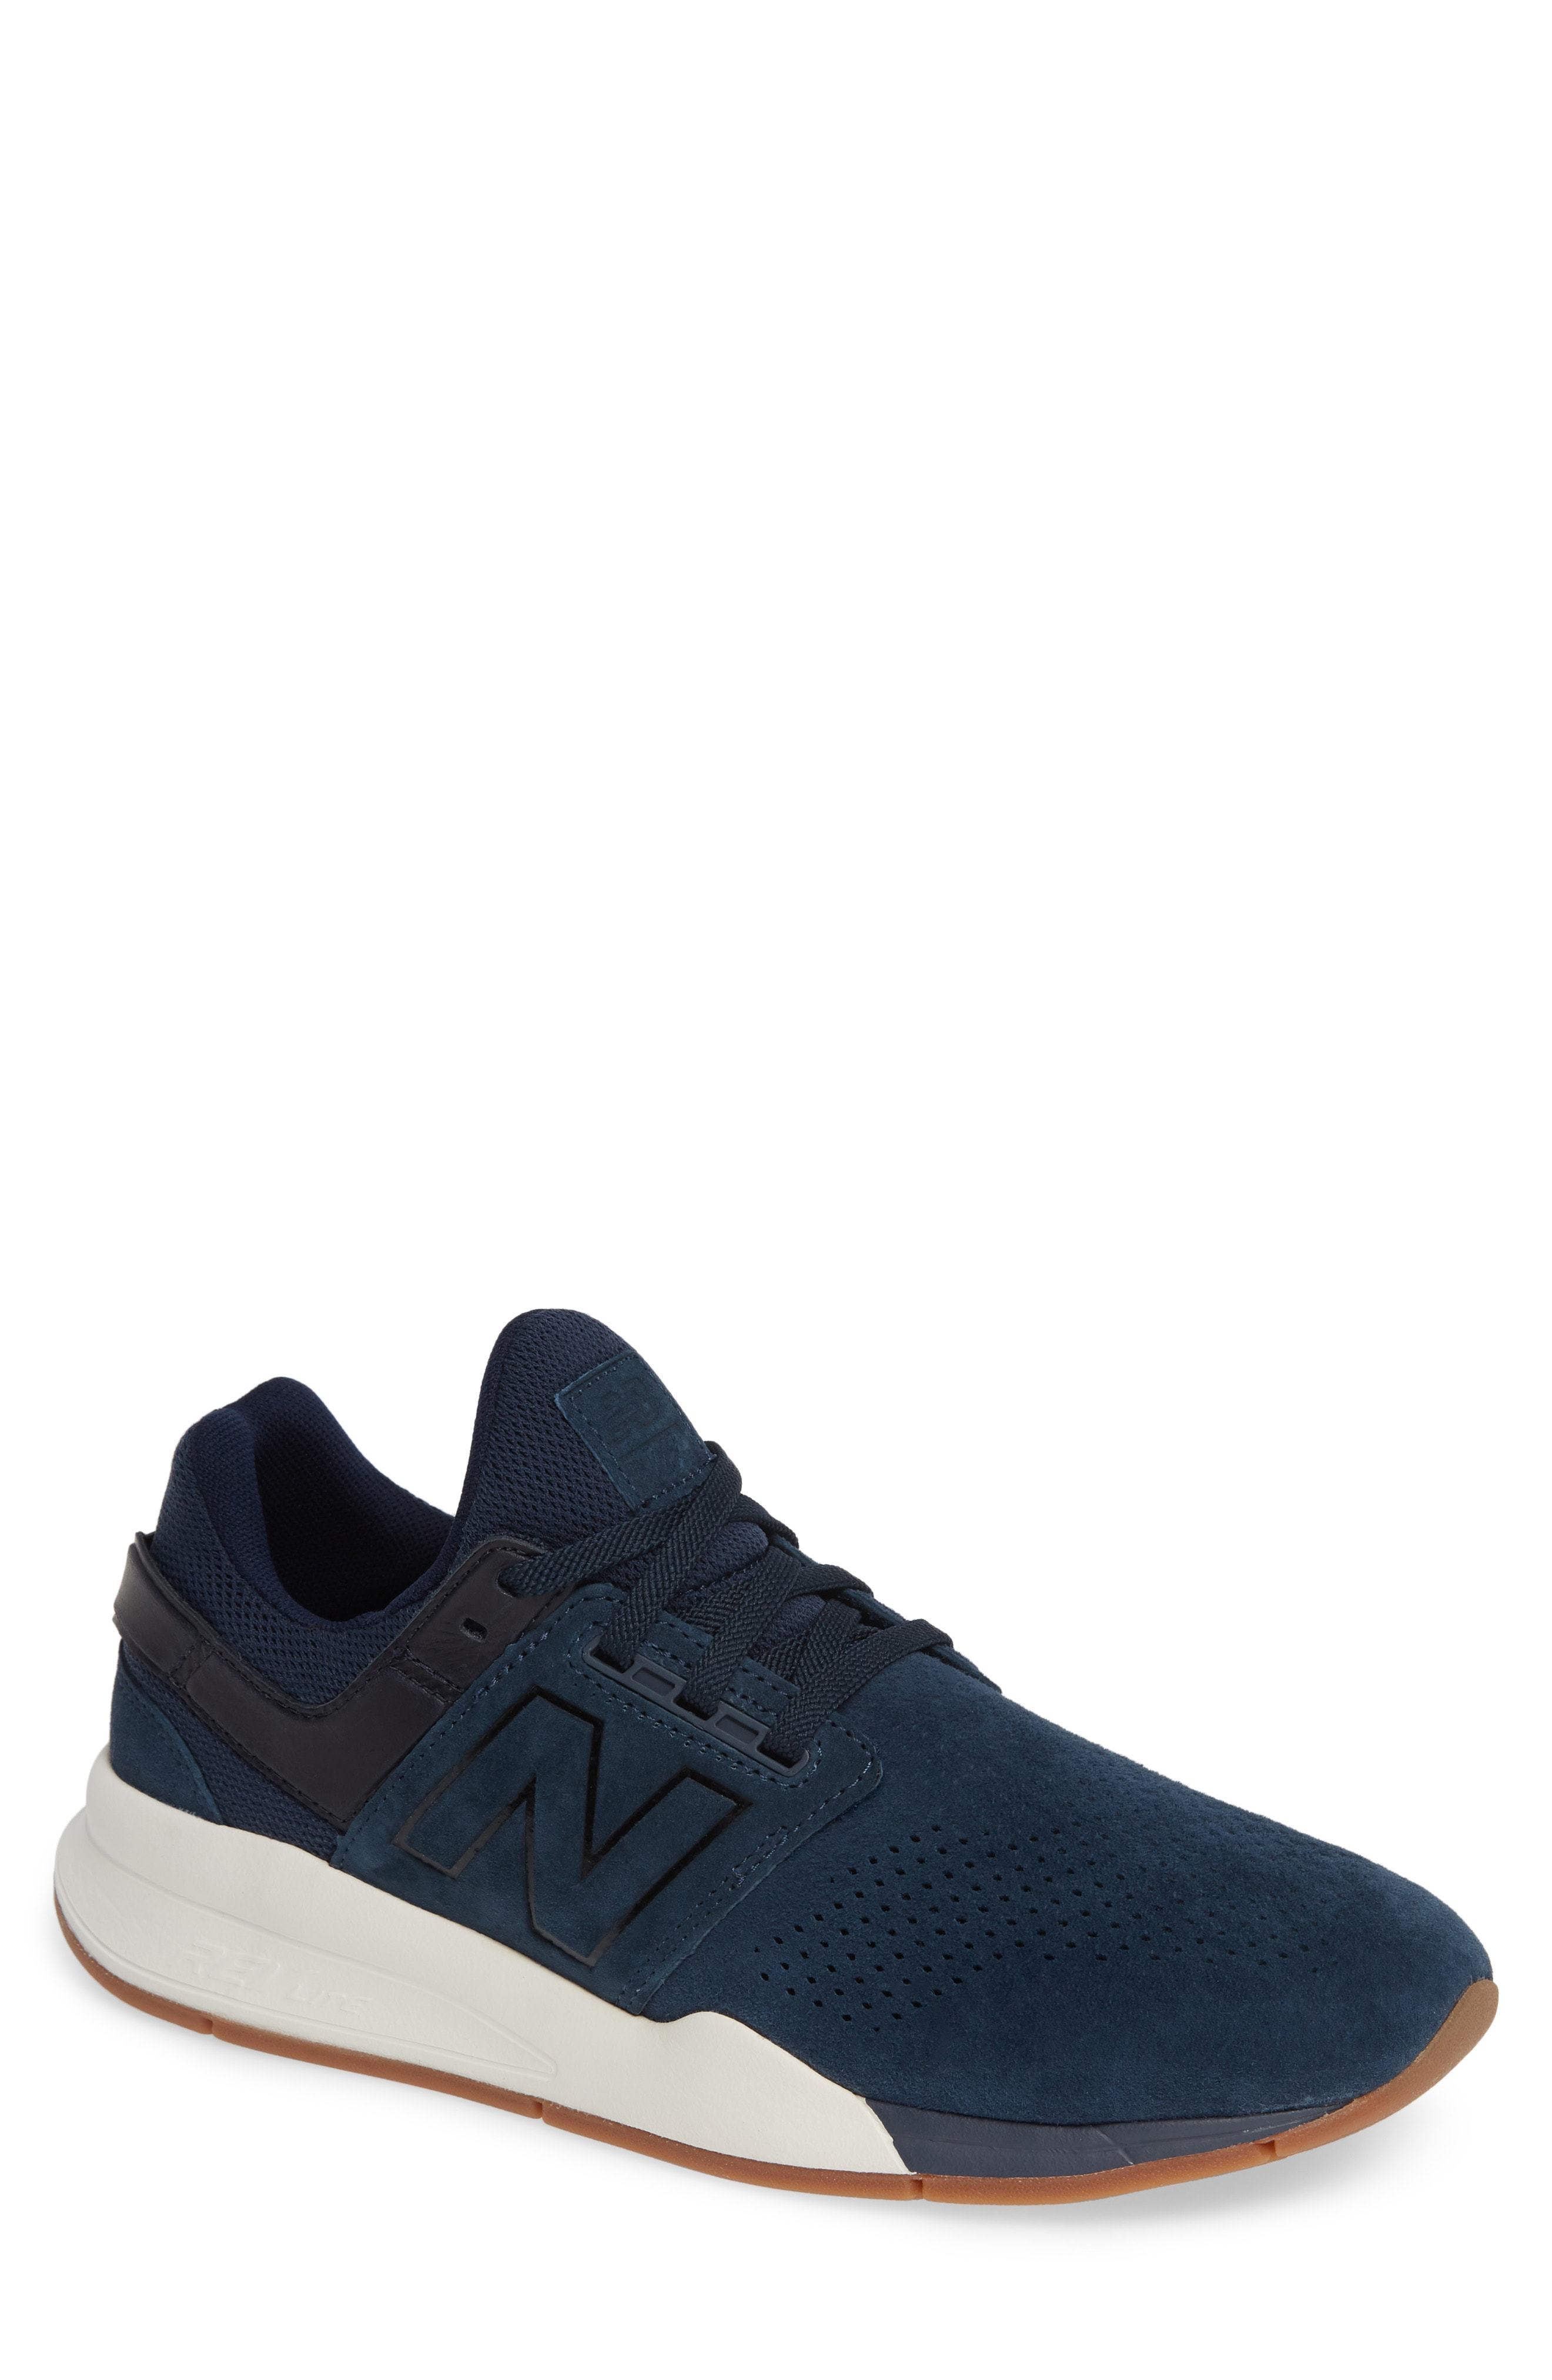 New Balance 247v2 Sneaker, $119 